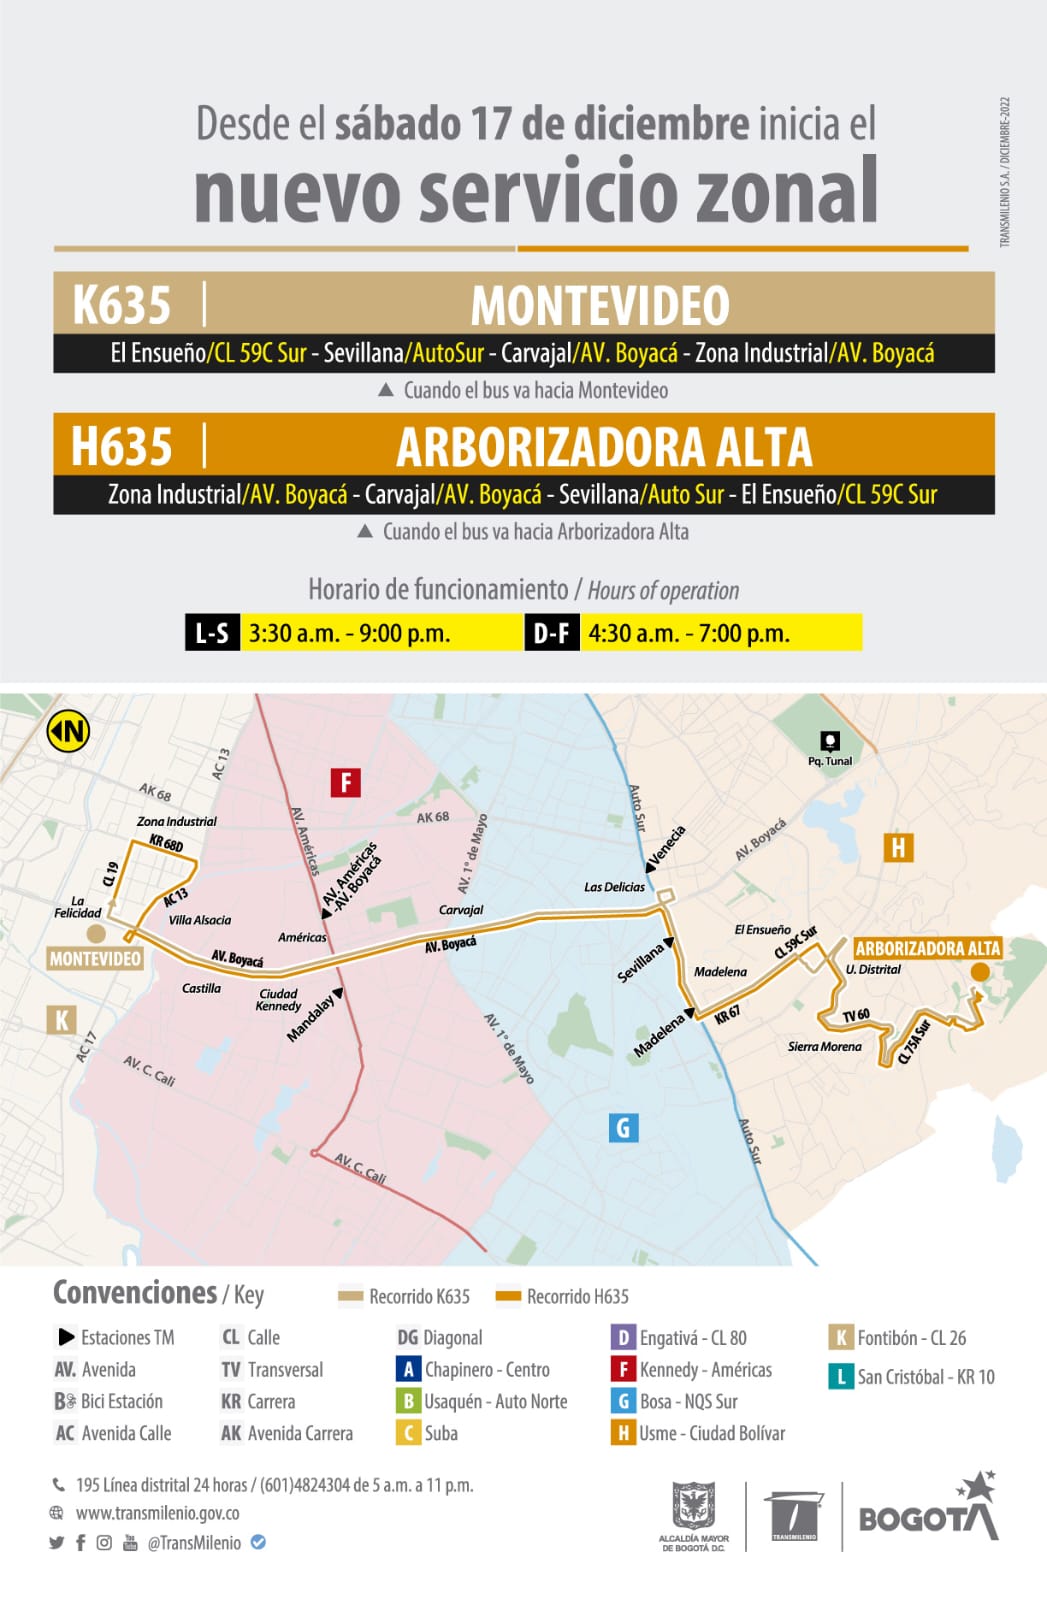 Desde este sábado 17 de diciembre comienza a operar la ruta zonal H635 Arborizadora Alta – K635 Montevideo. Este servicio beneficiará a los habitantes de las localidades Ciudad Bolívar, Kennedy y Fontibón, entre otras. Su horario de operación es de lunes a sábado, de 3:00 de la mañana a 9:00 de la noche, y los domingos y festivos, de 4:30 de la mañana a 7:00 de la noche. Aquí, una imagen con más datos de la ruta zonal H635 Arborizadora Alta – K635 Montevideo. 